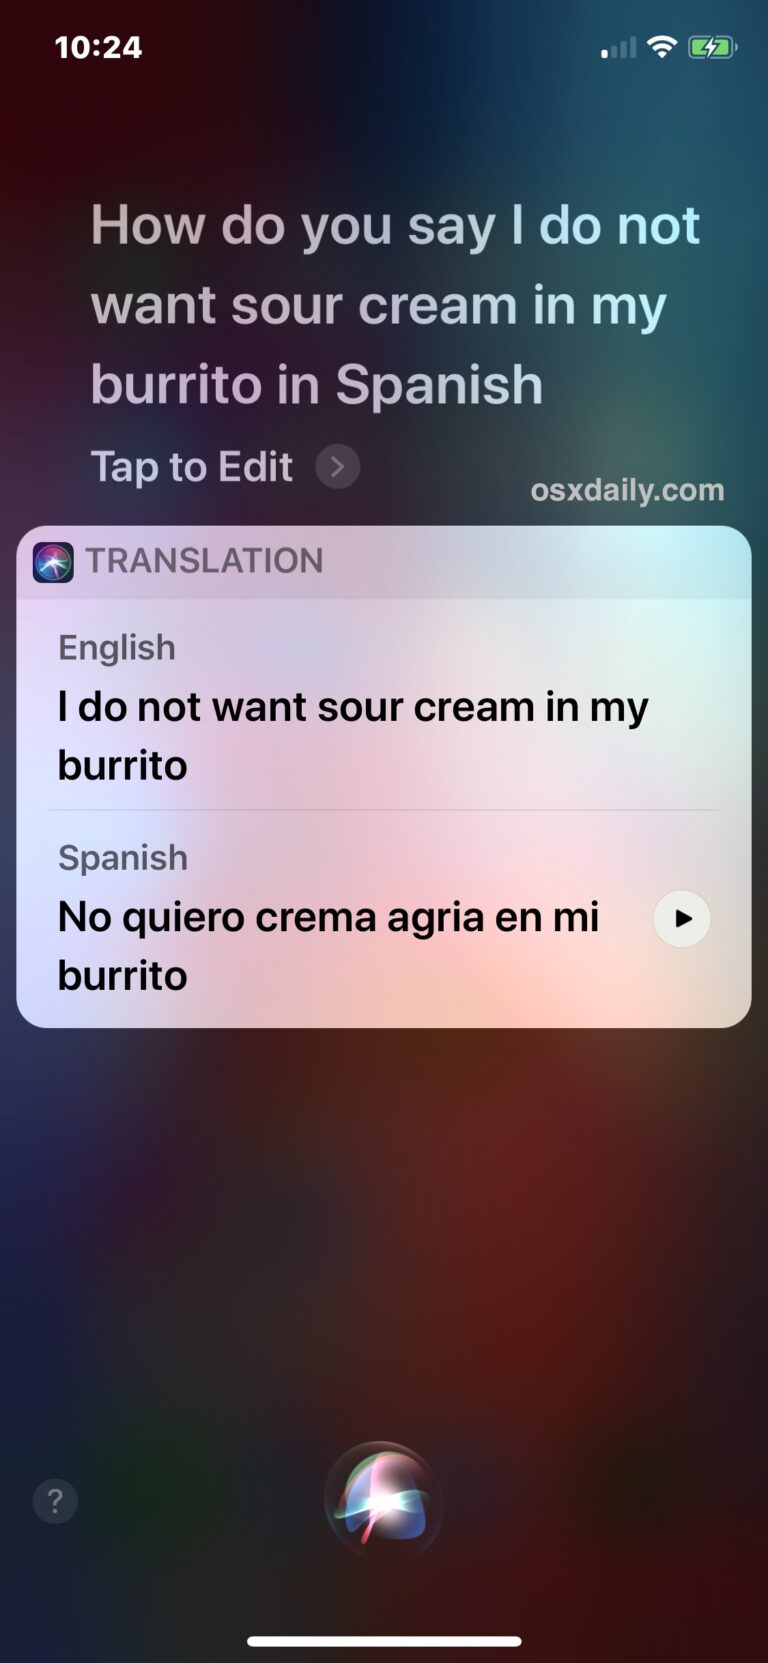 Как переводить языки с помощью Siri на iPhone и iPad